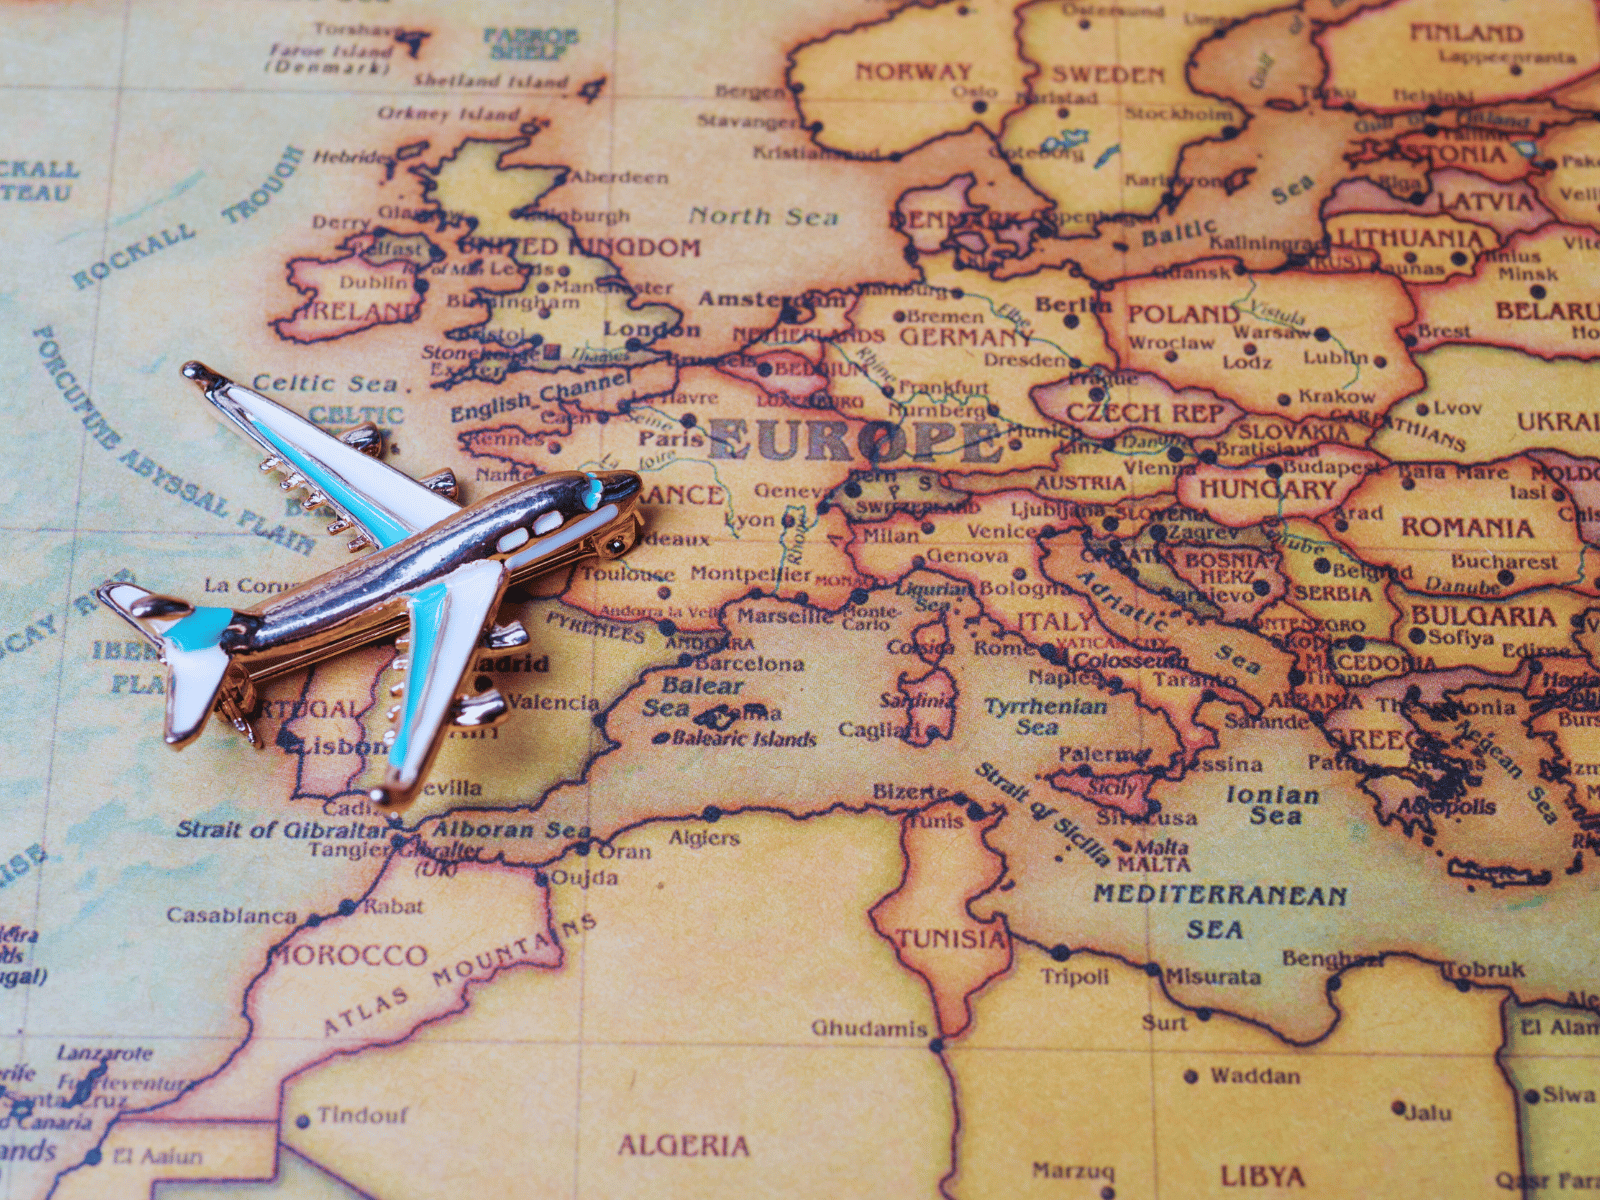 Viaggiate verso le migliori destinazioni in Europa quest'estate con Air Horizont.